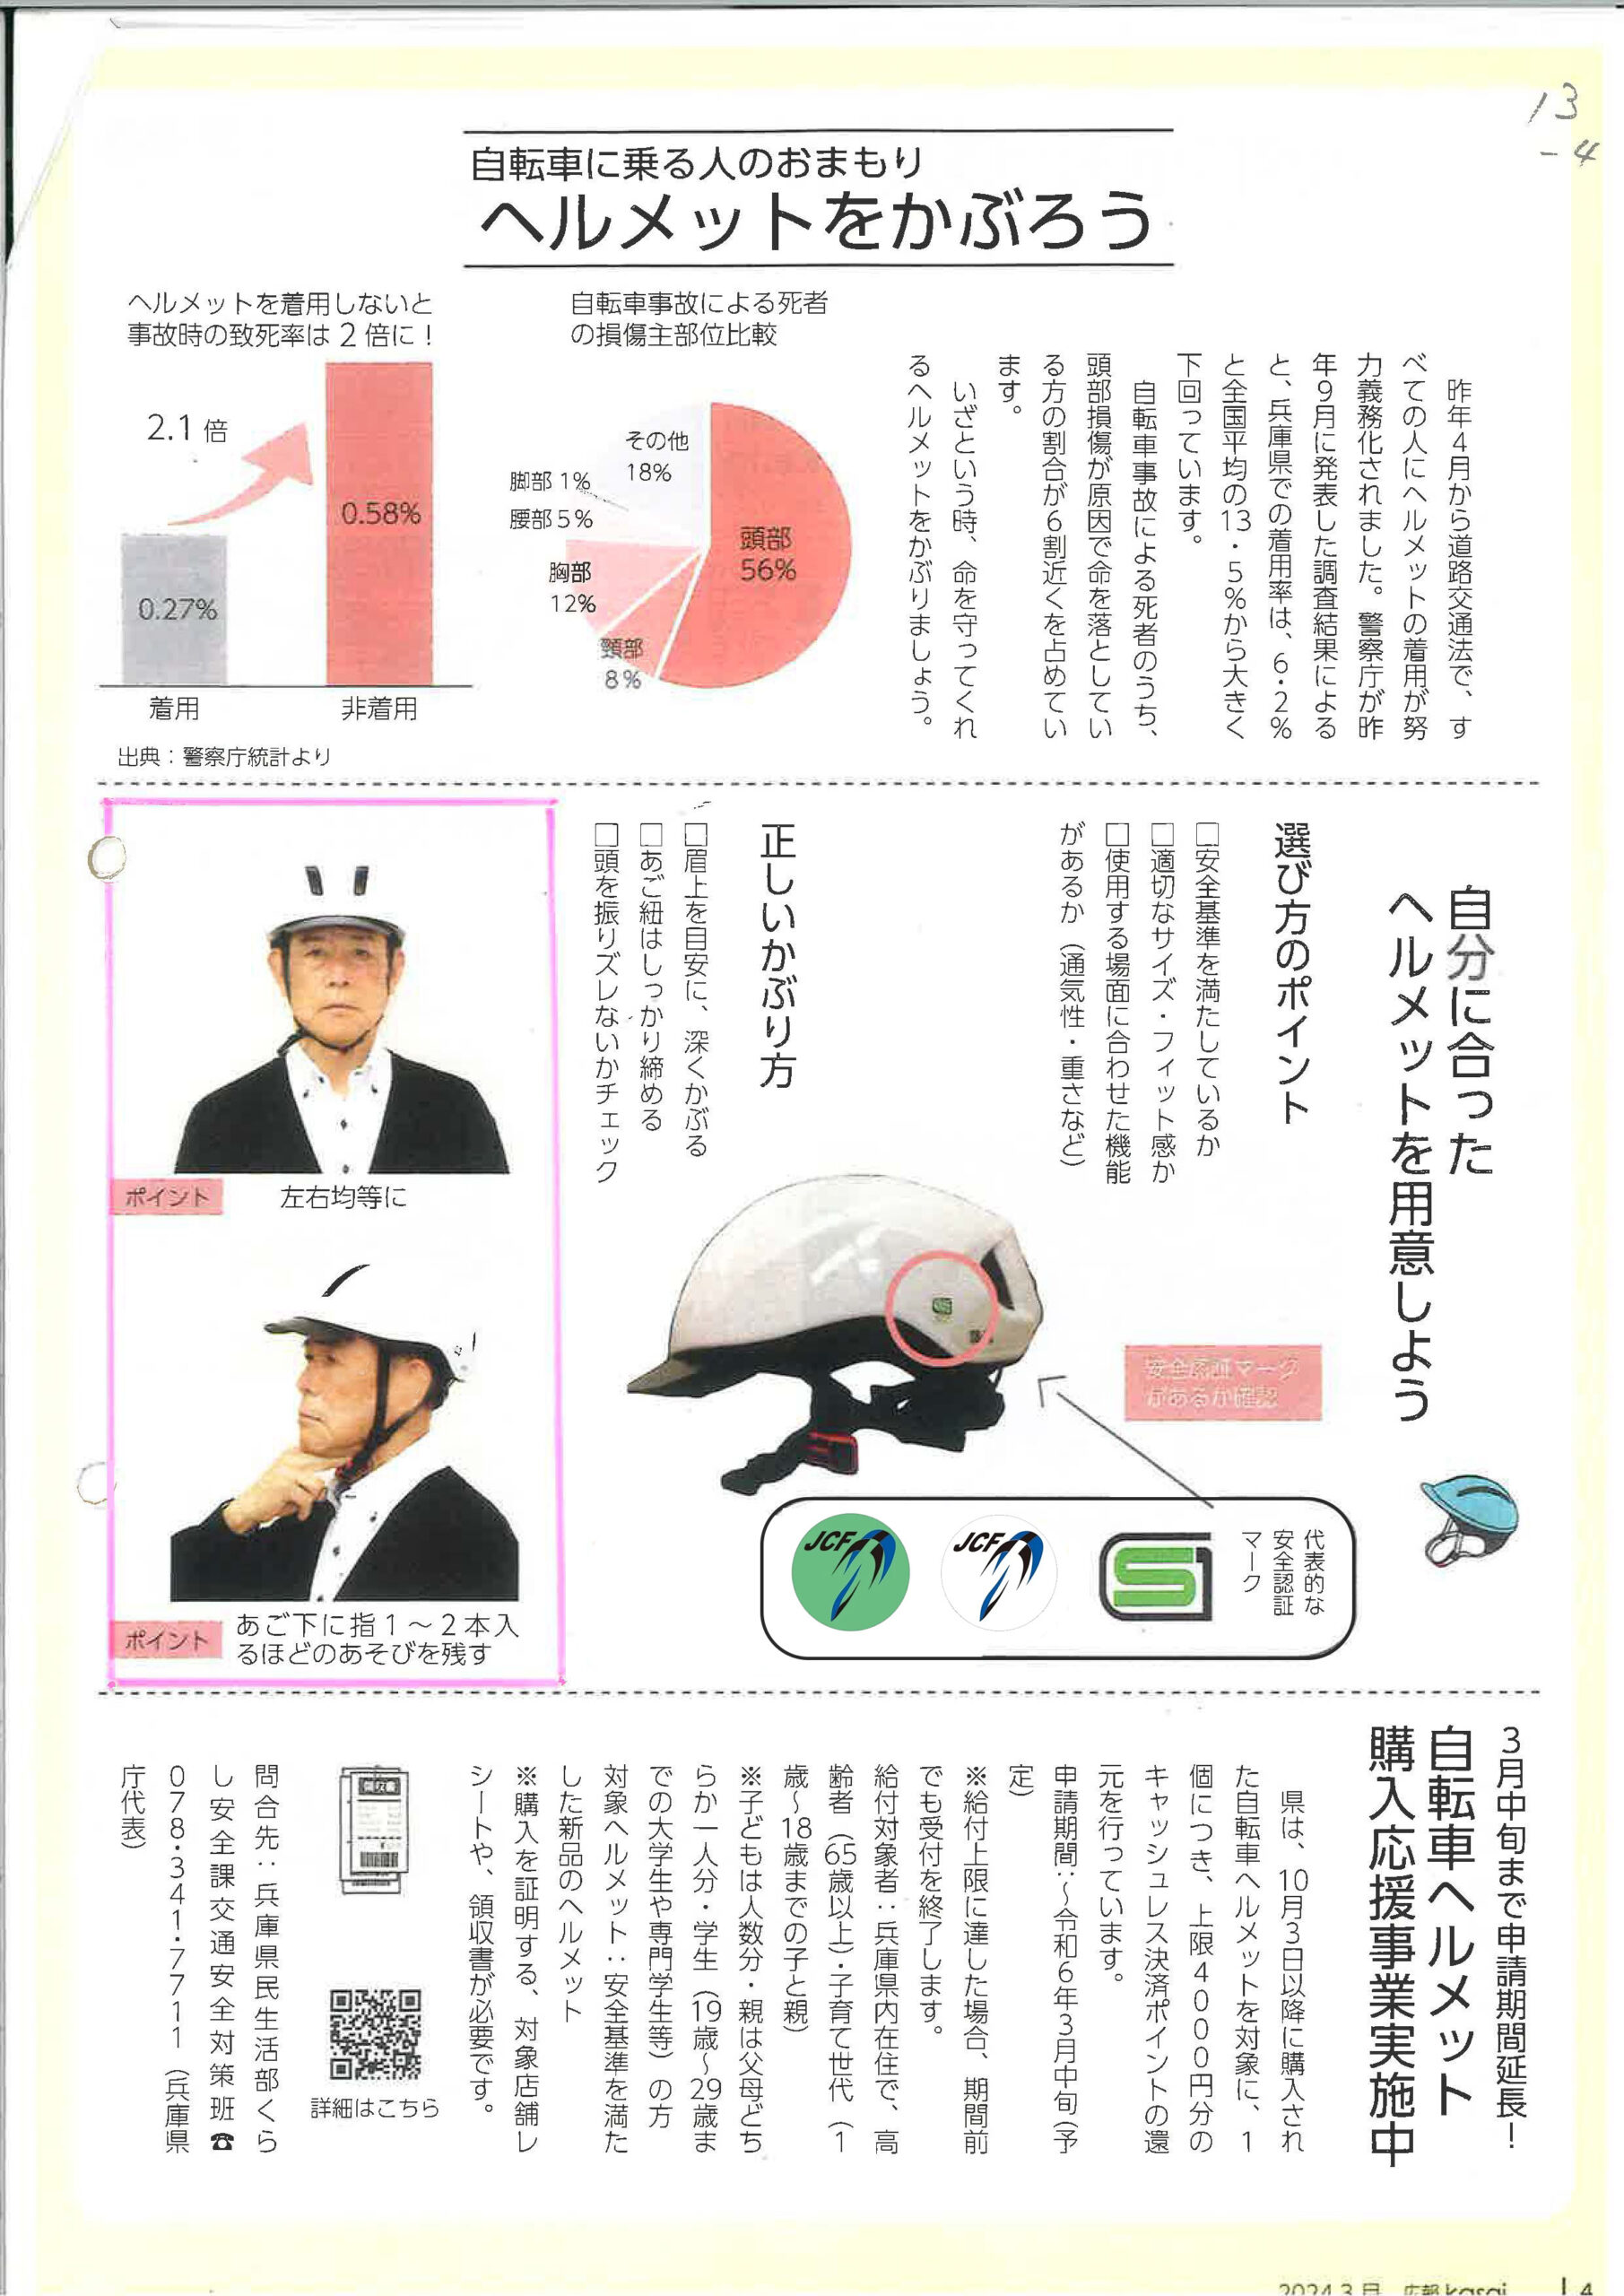 「広報かさい」に自転車ルール等の記事が掲載